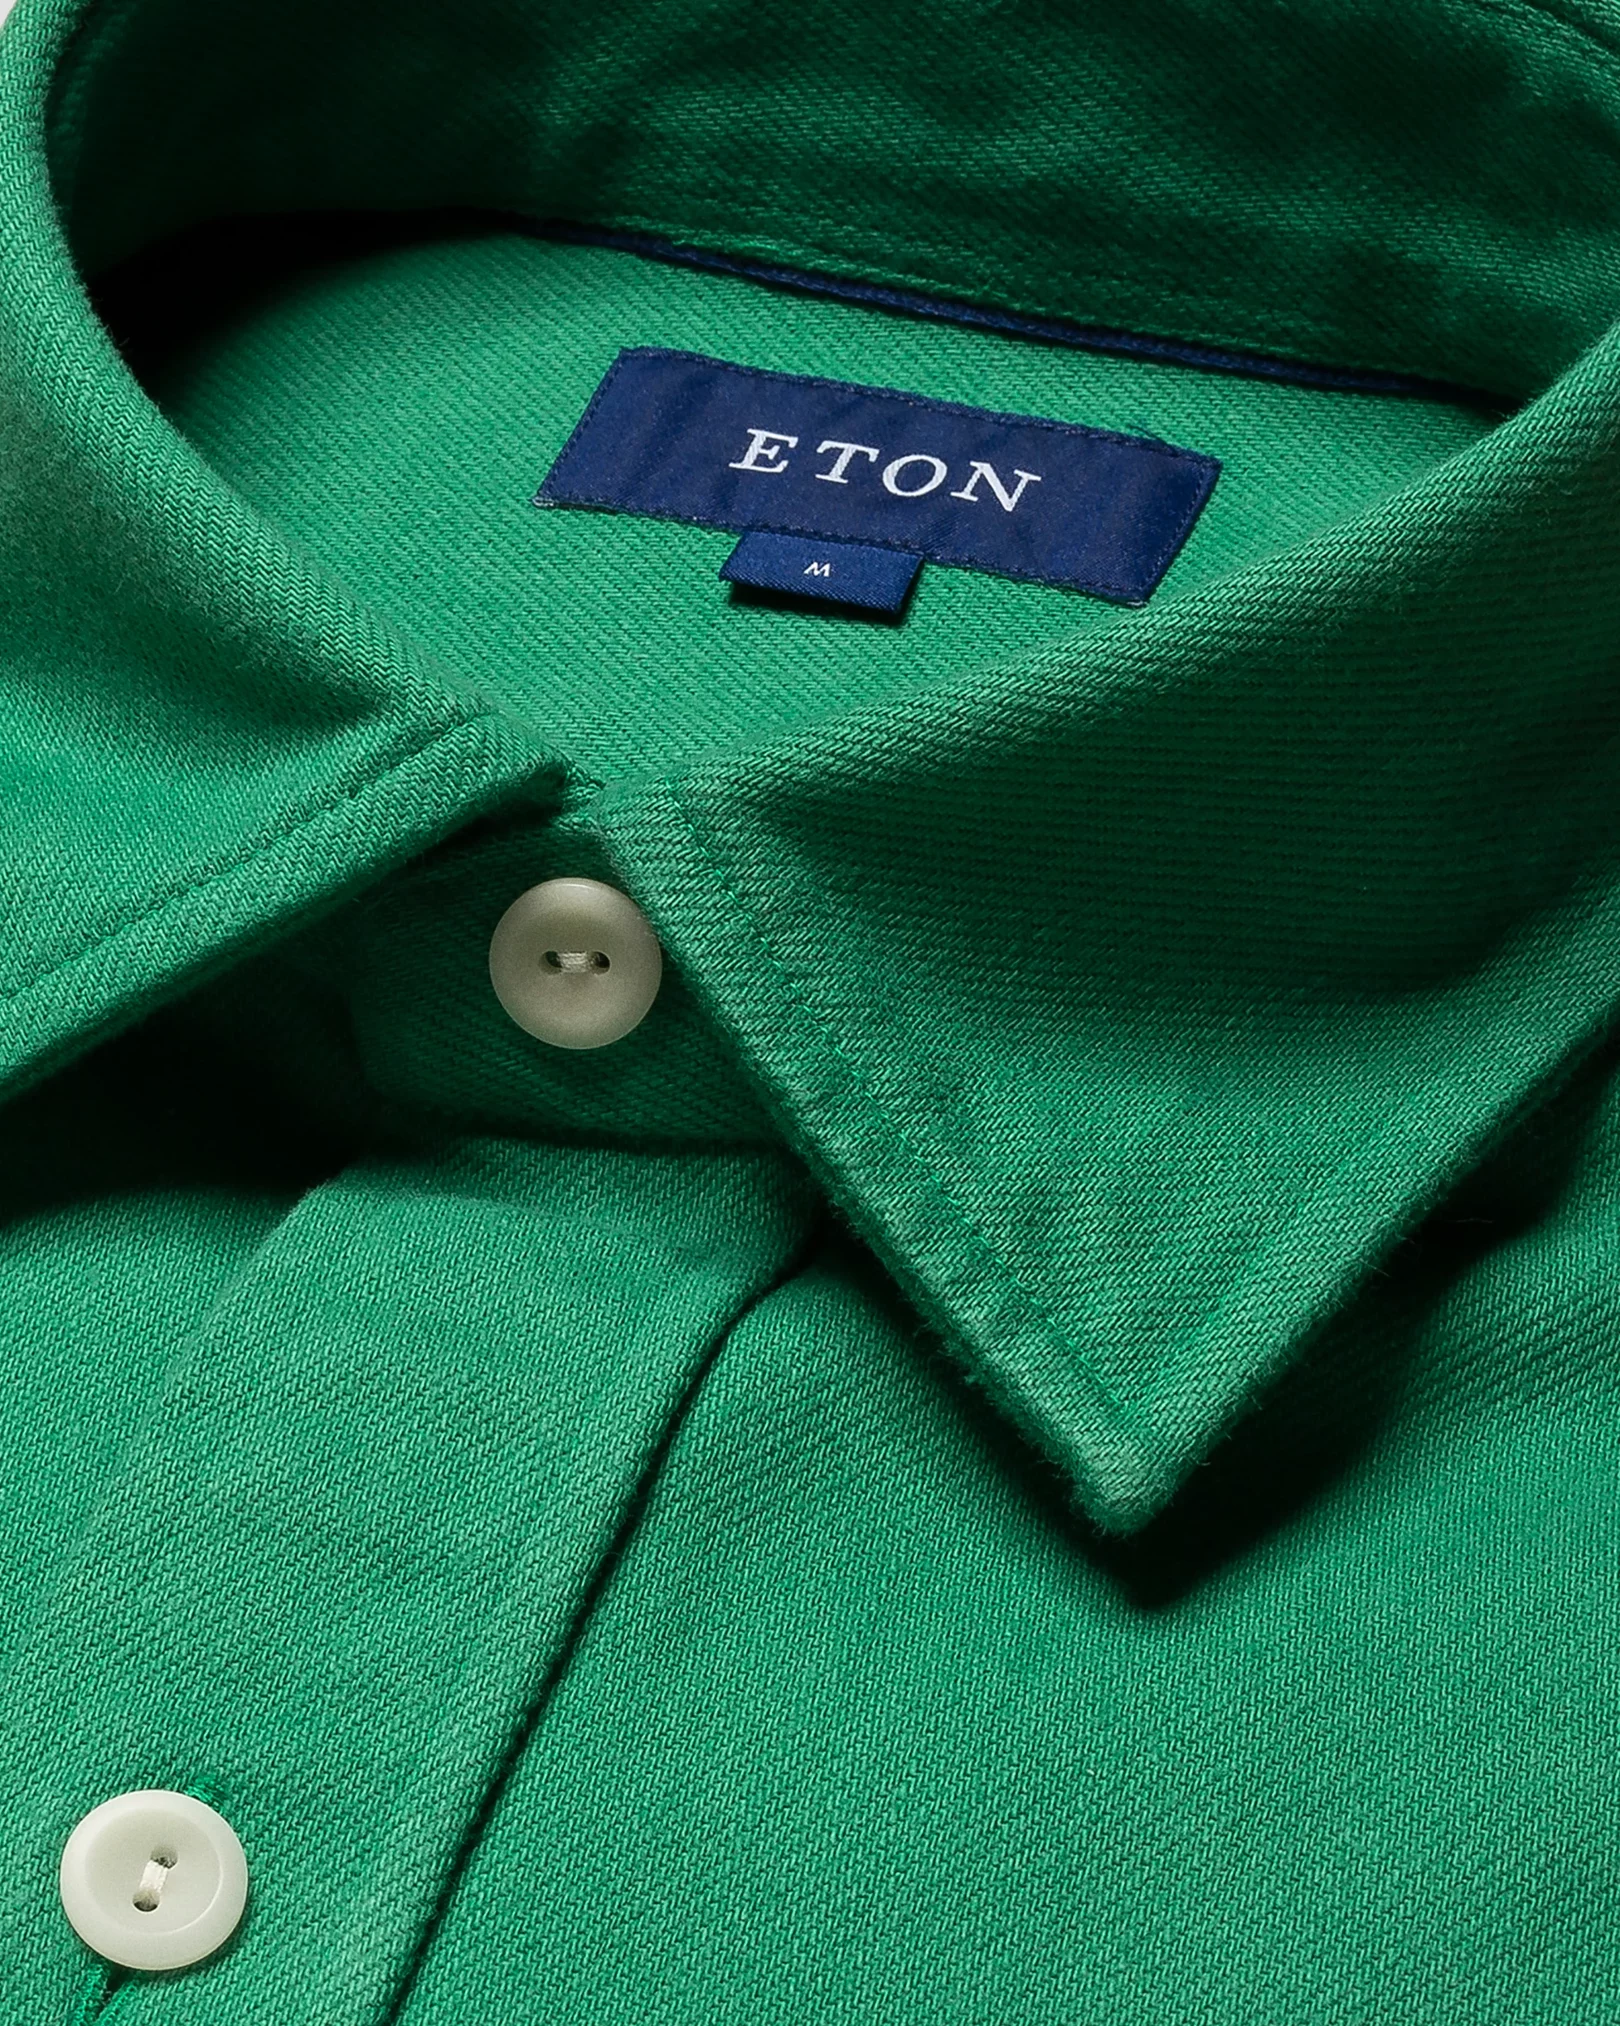 Eton - mid green heavy twill overshirt